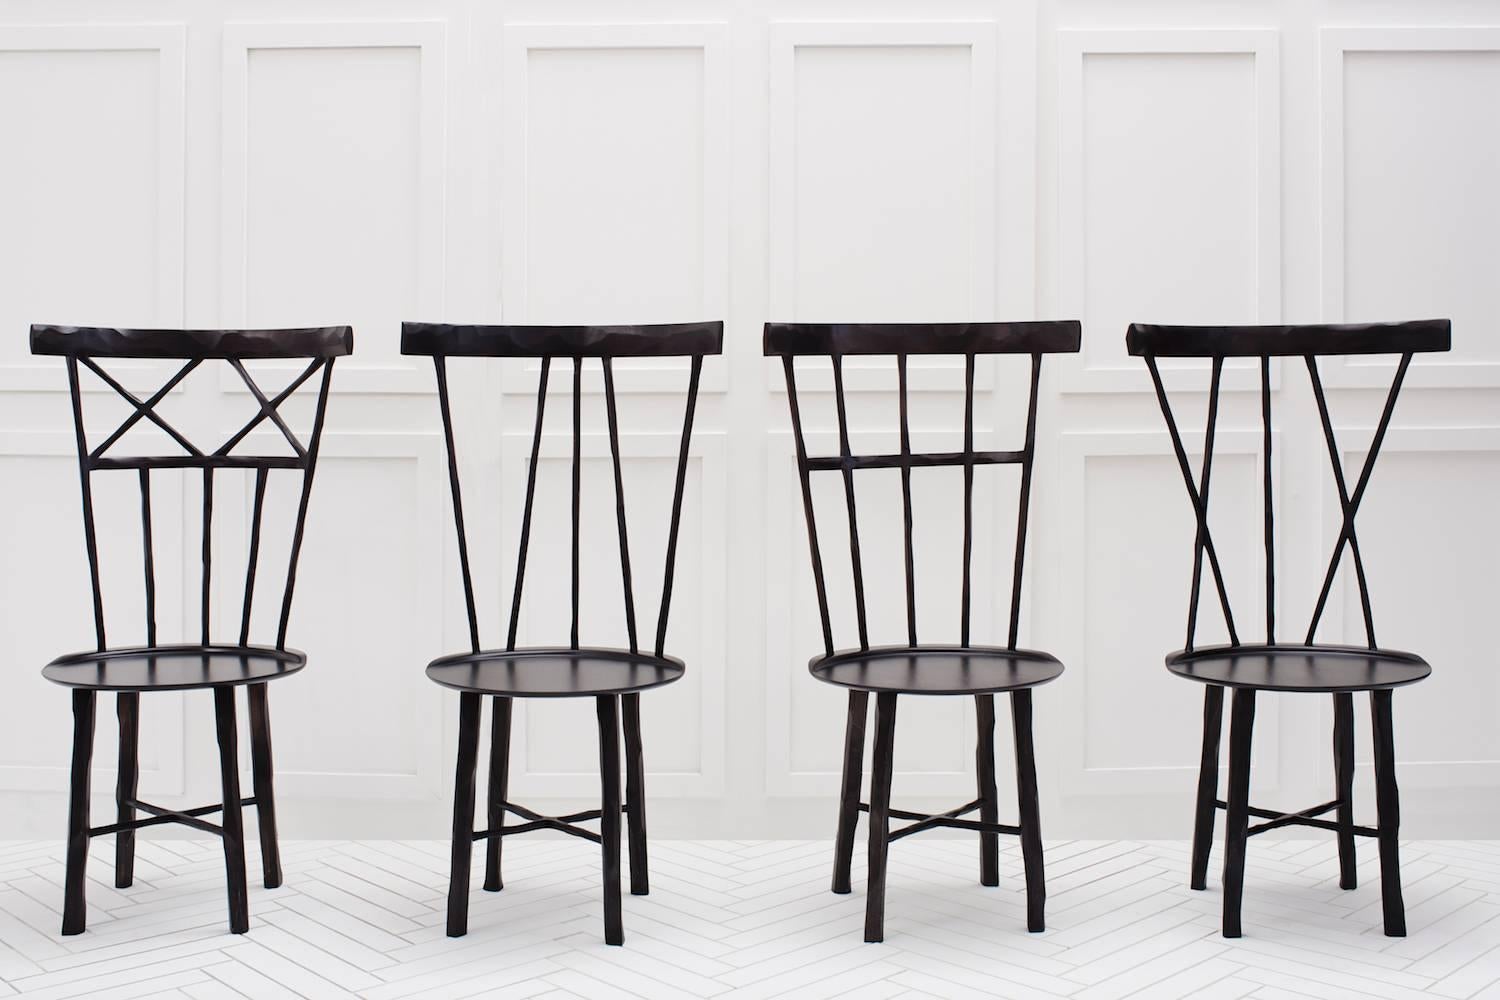 Une interprétation moderne de la chaise Windsor classique. Fabriqués en érable dur, chaque rayon et chaque pied sont méticuleusement sculptés à la main avec des contours organiques doux. 

Veuillez noter que les délais de livraison pour les